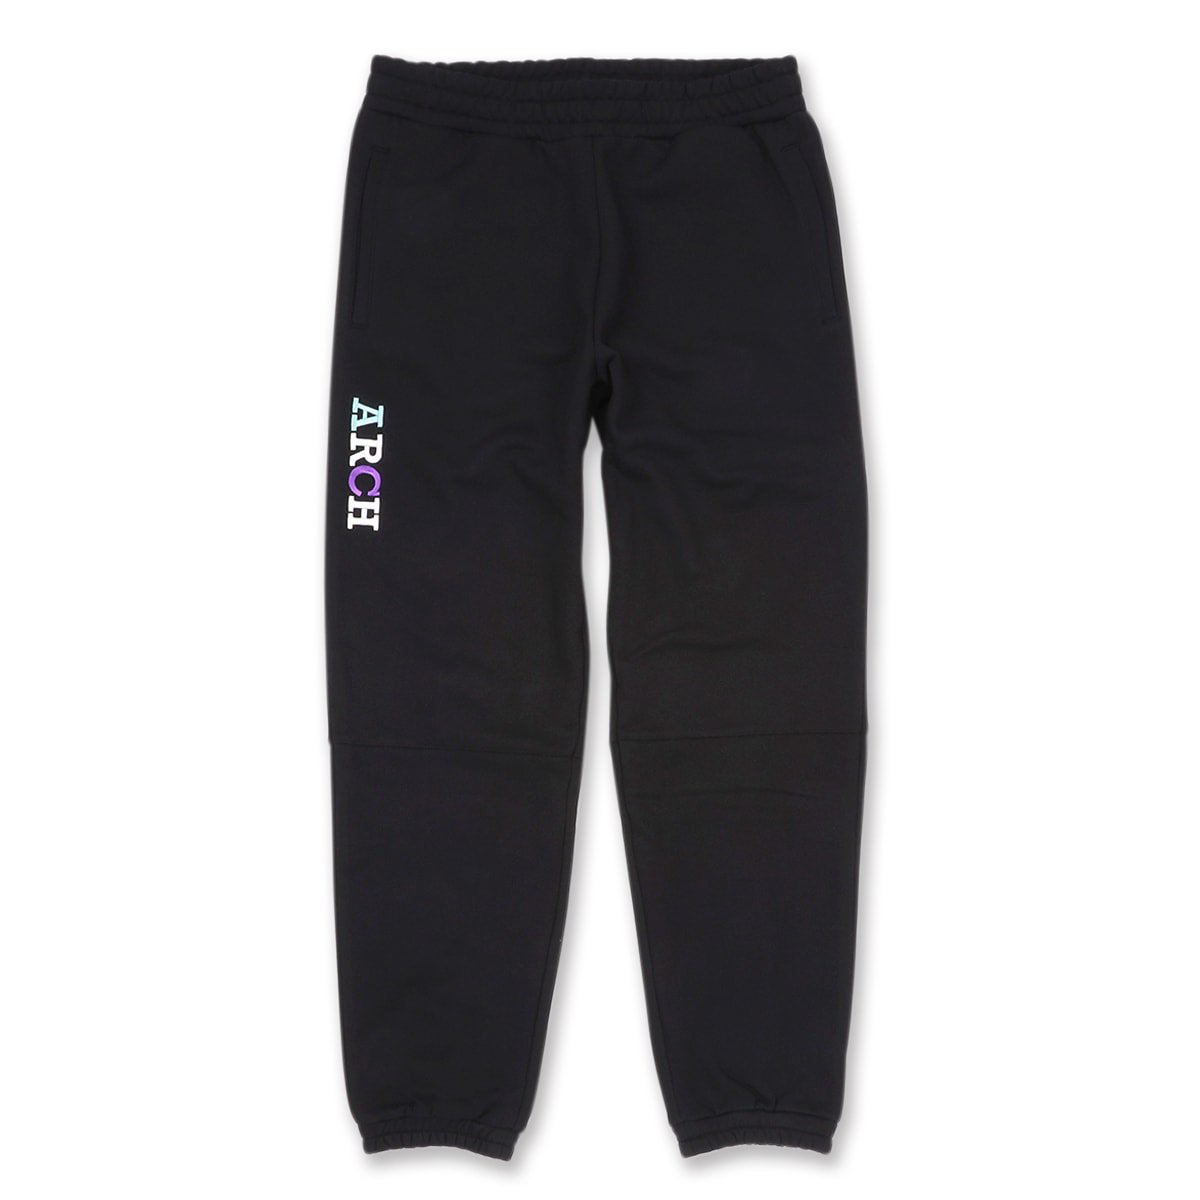 4colors sweat pants【black】